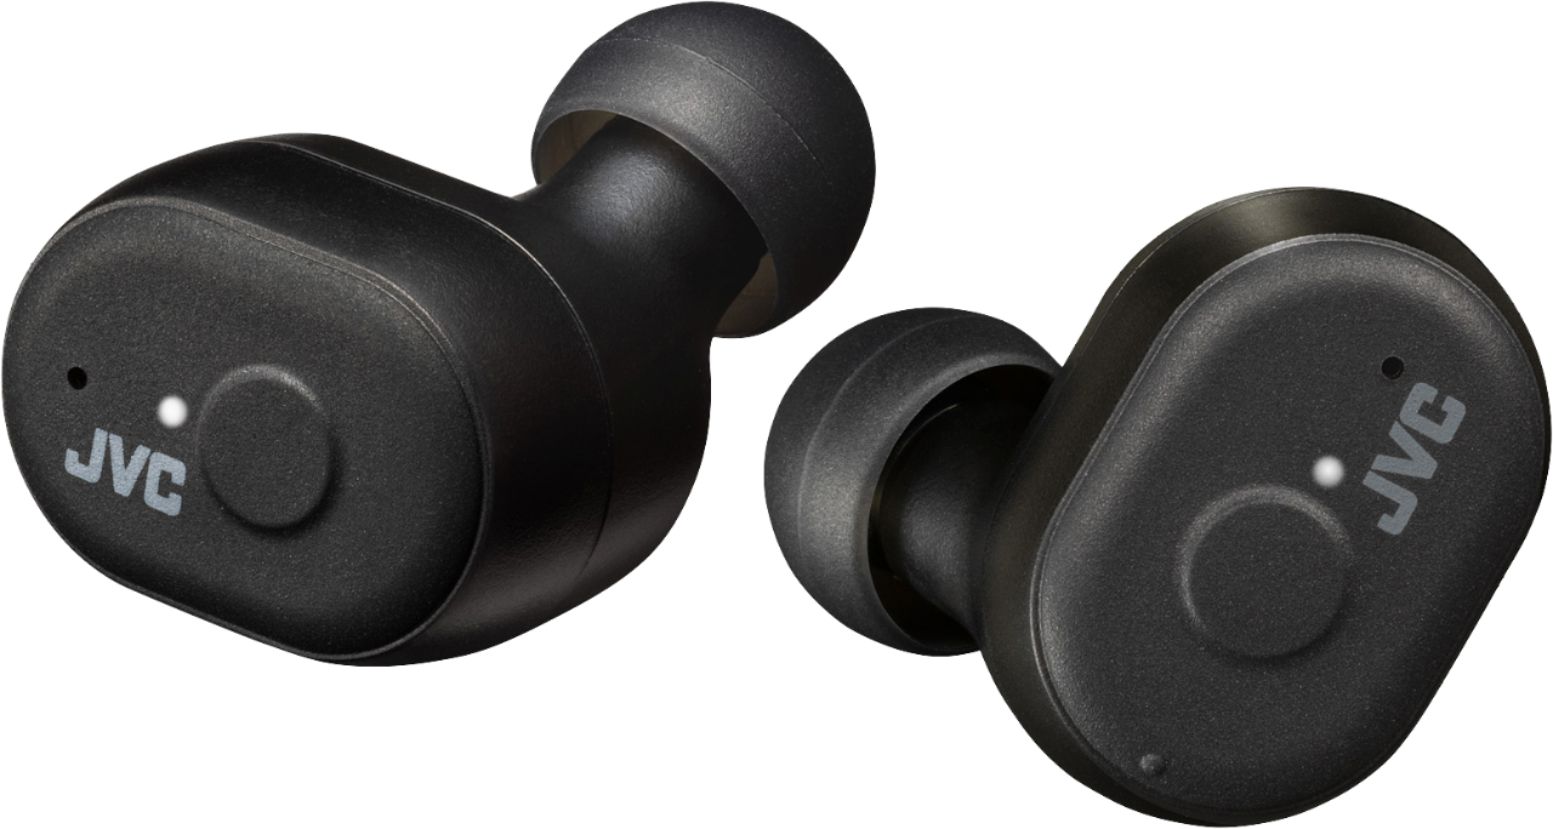 Angle View: JVC - Marshmallow True Wireless In-Ear Headphones - Black